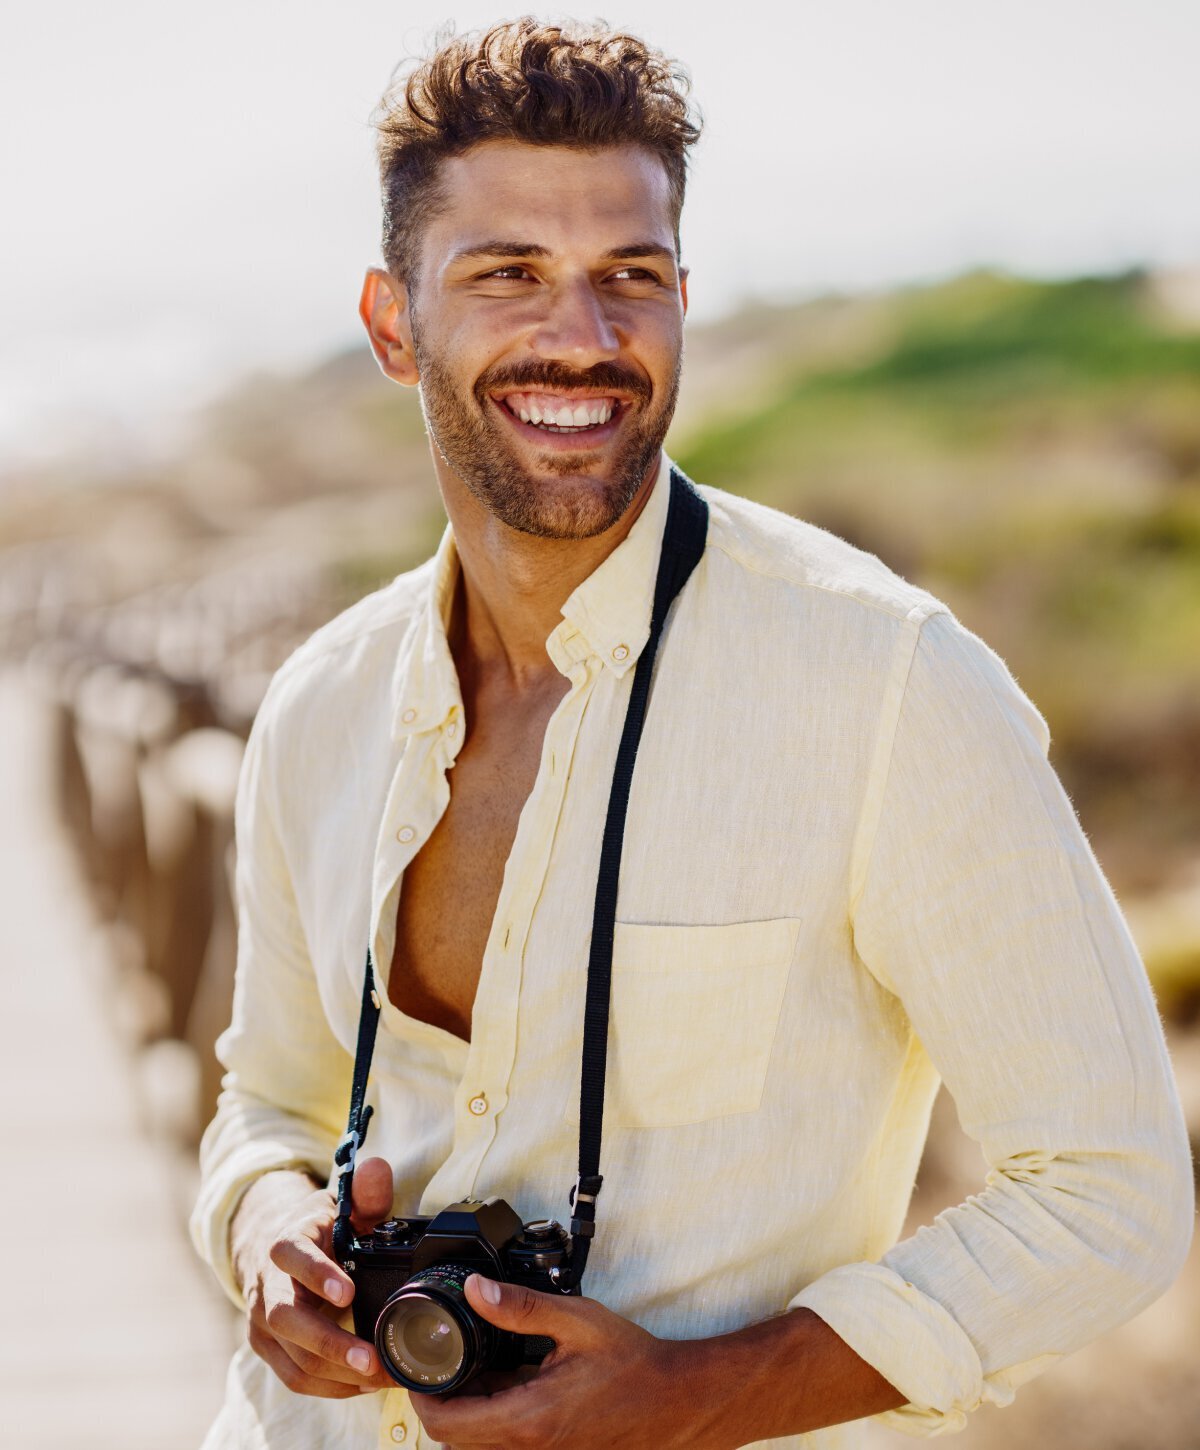 Male Miami liposuction model smiling